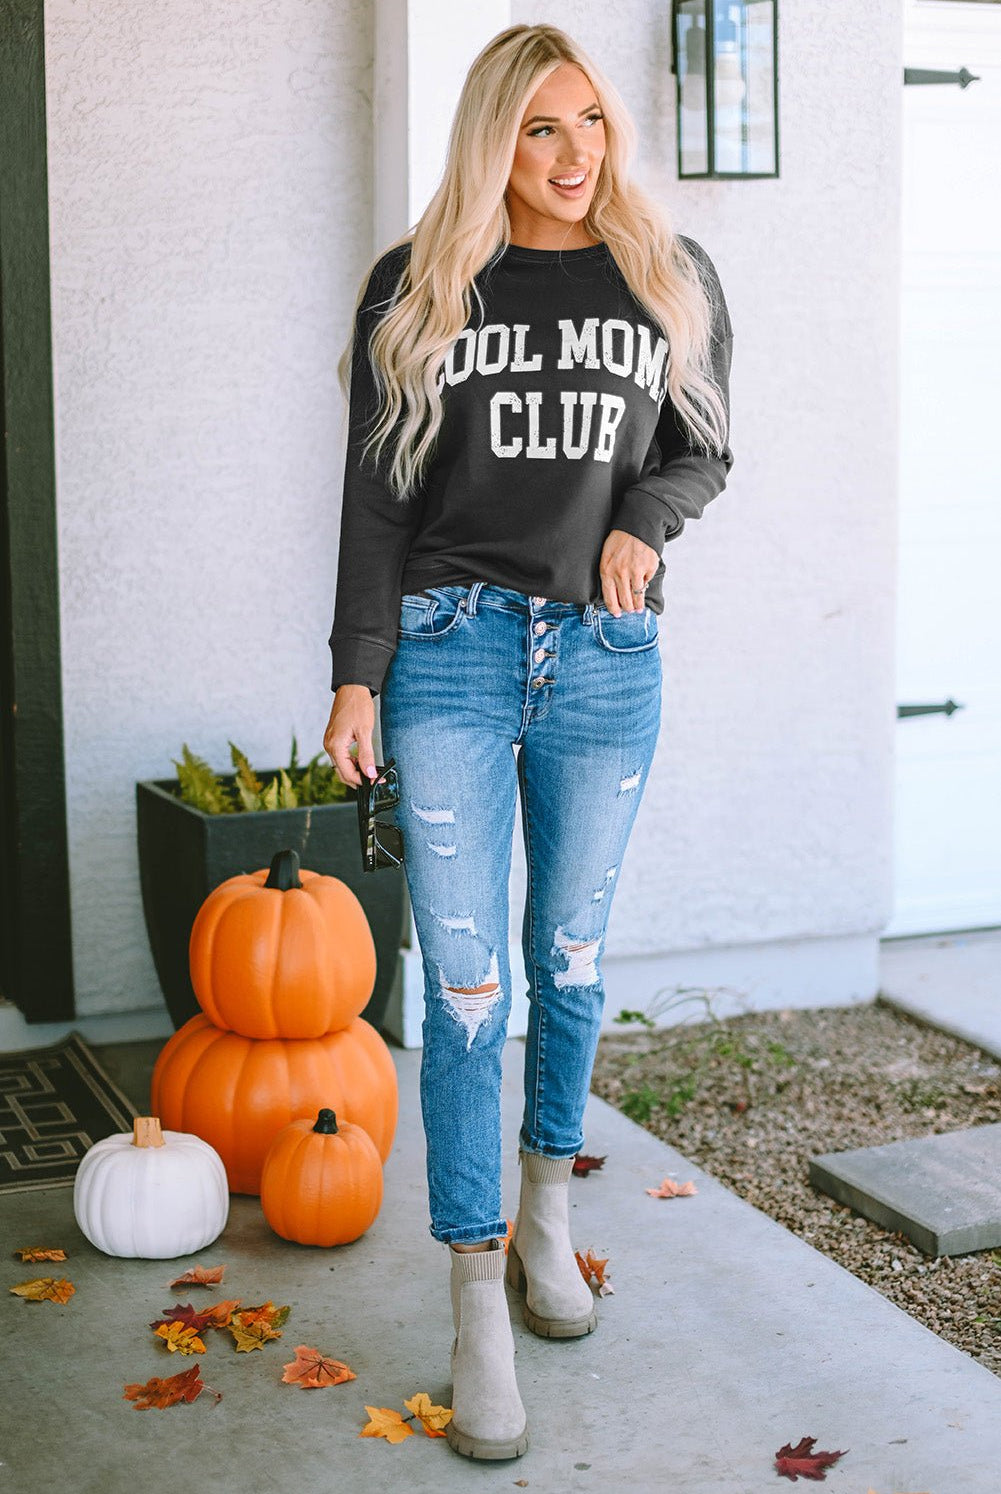 COOL MOM CLUB Round Neck Short Sleeve Sweatshirt - GemThreads Boutique